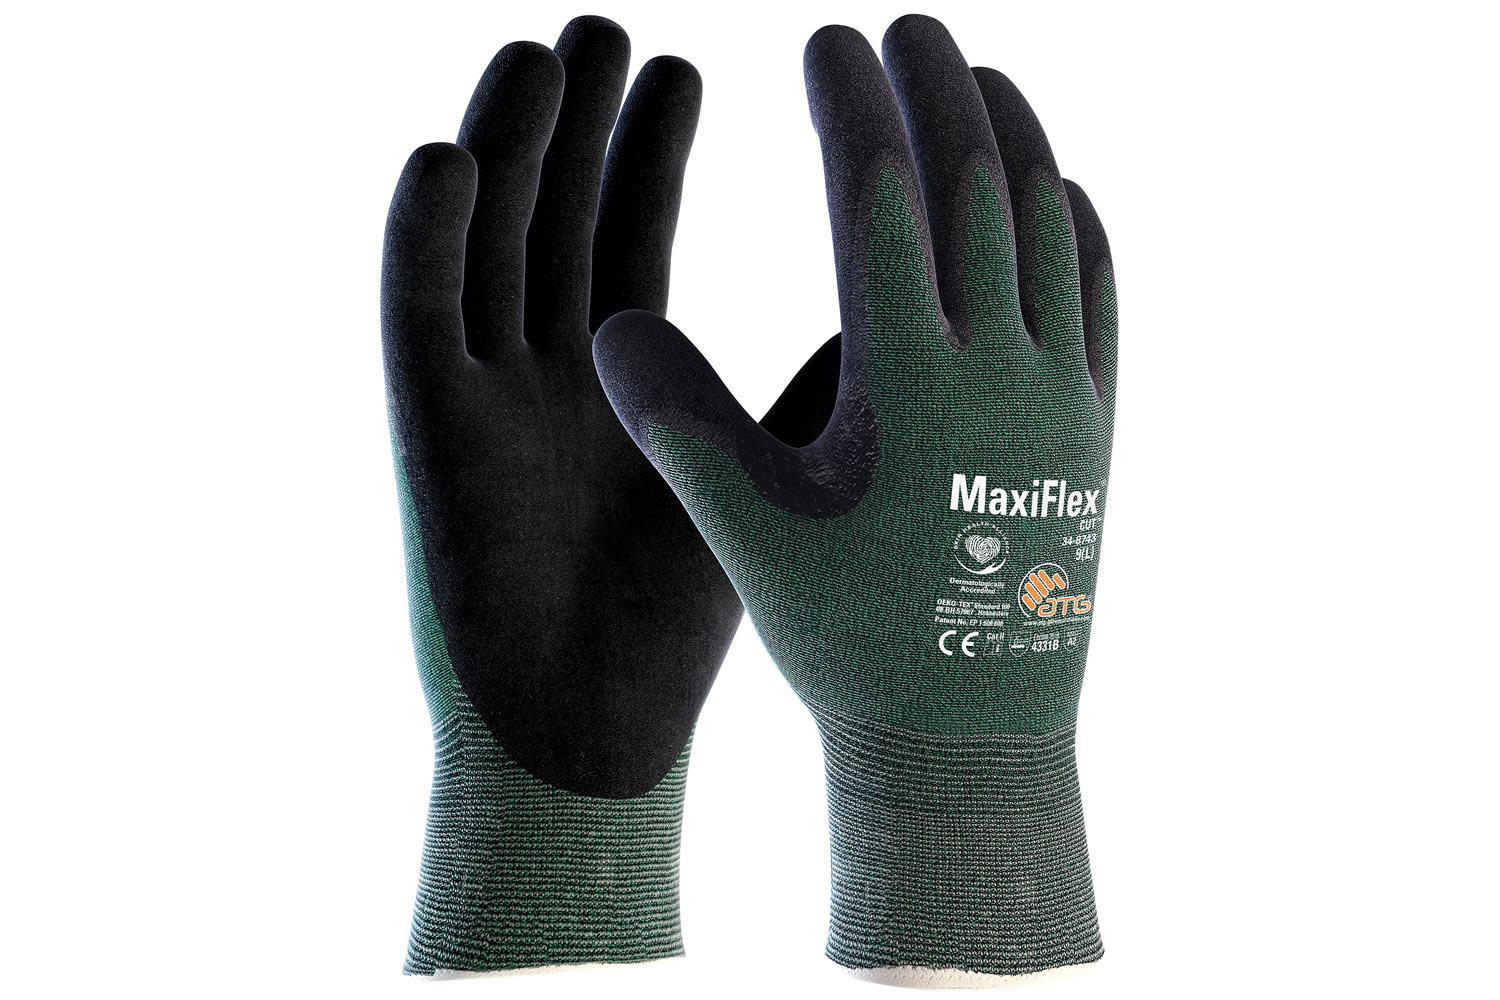 MaxiFlex Cut 34-8743 Glove